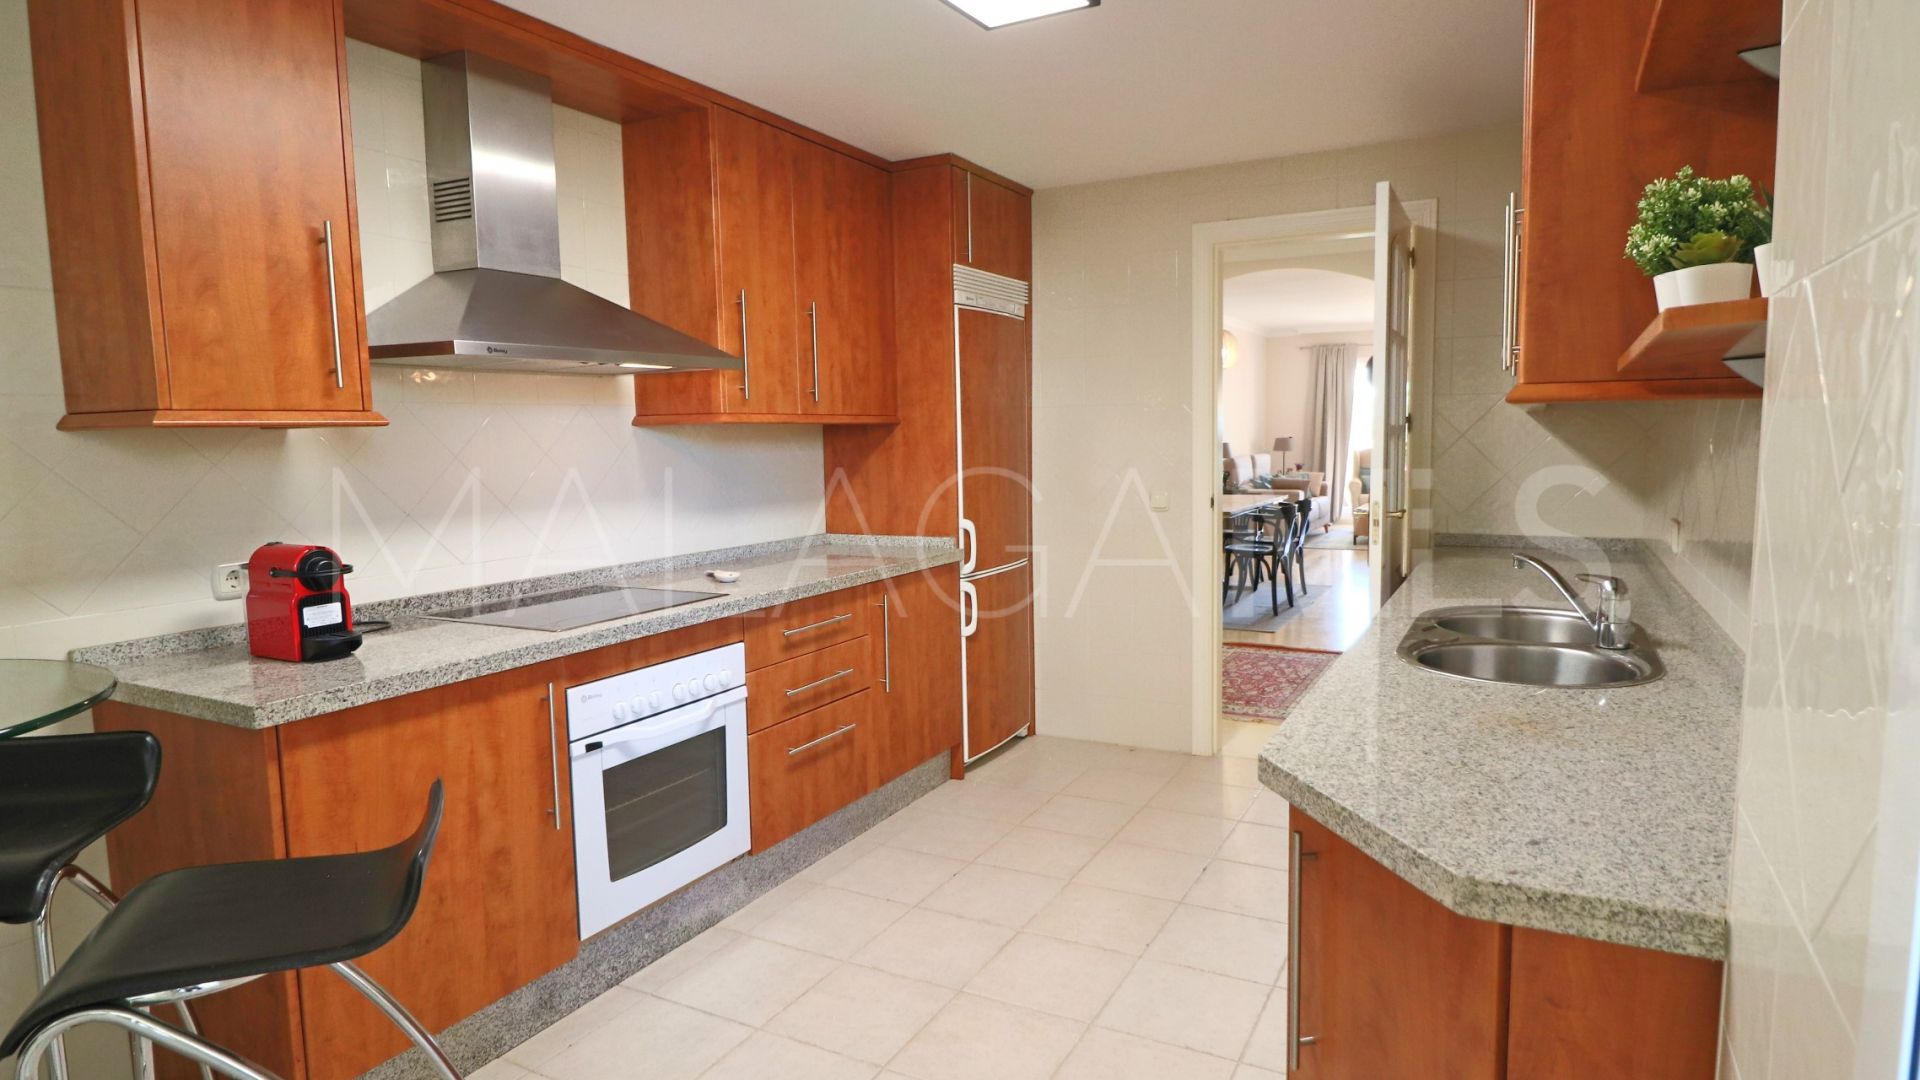 Buy apartamento in Marbella with 2 bedrooms